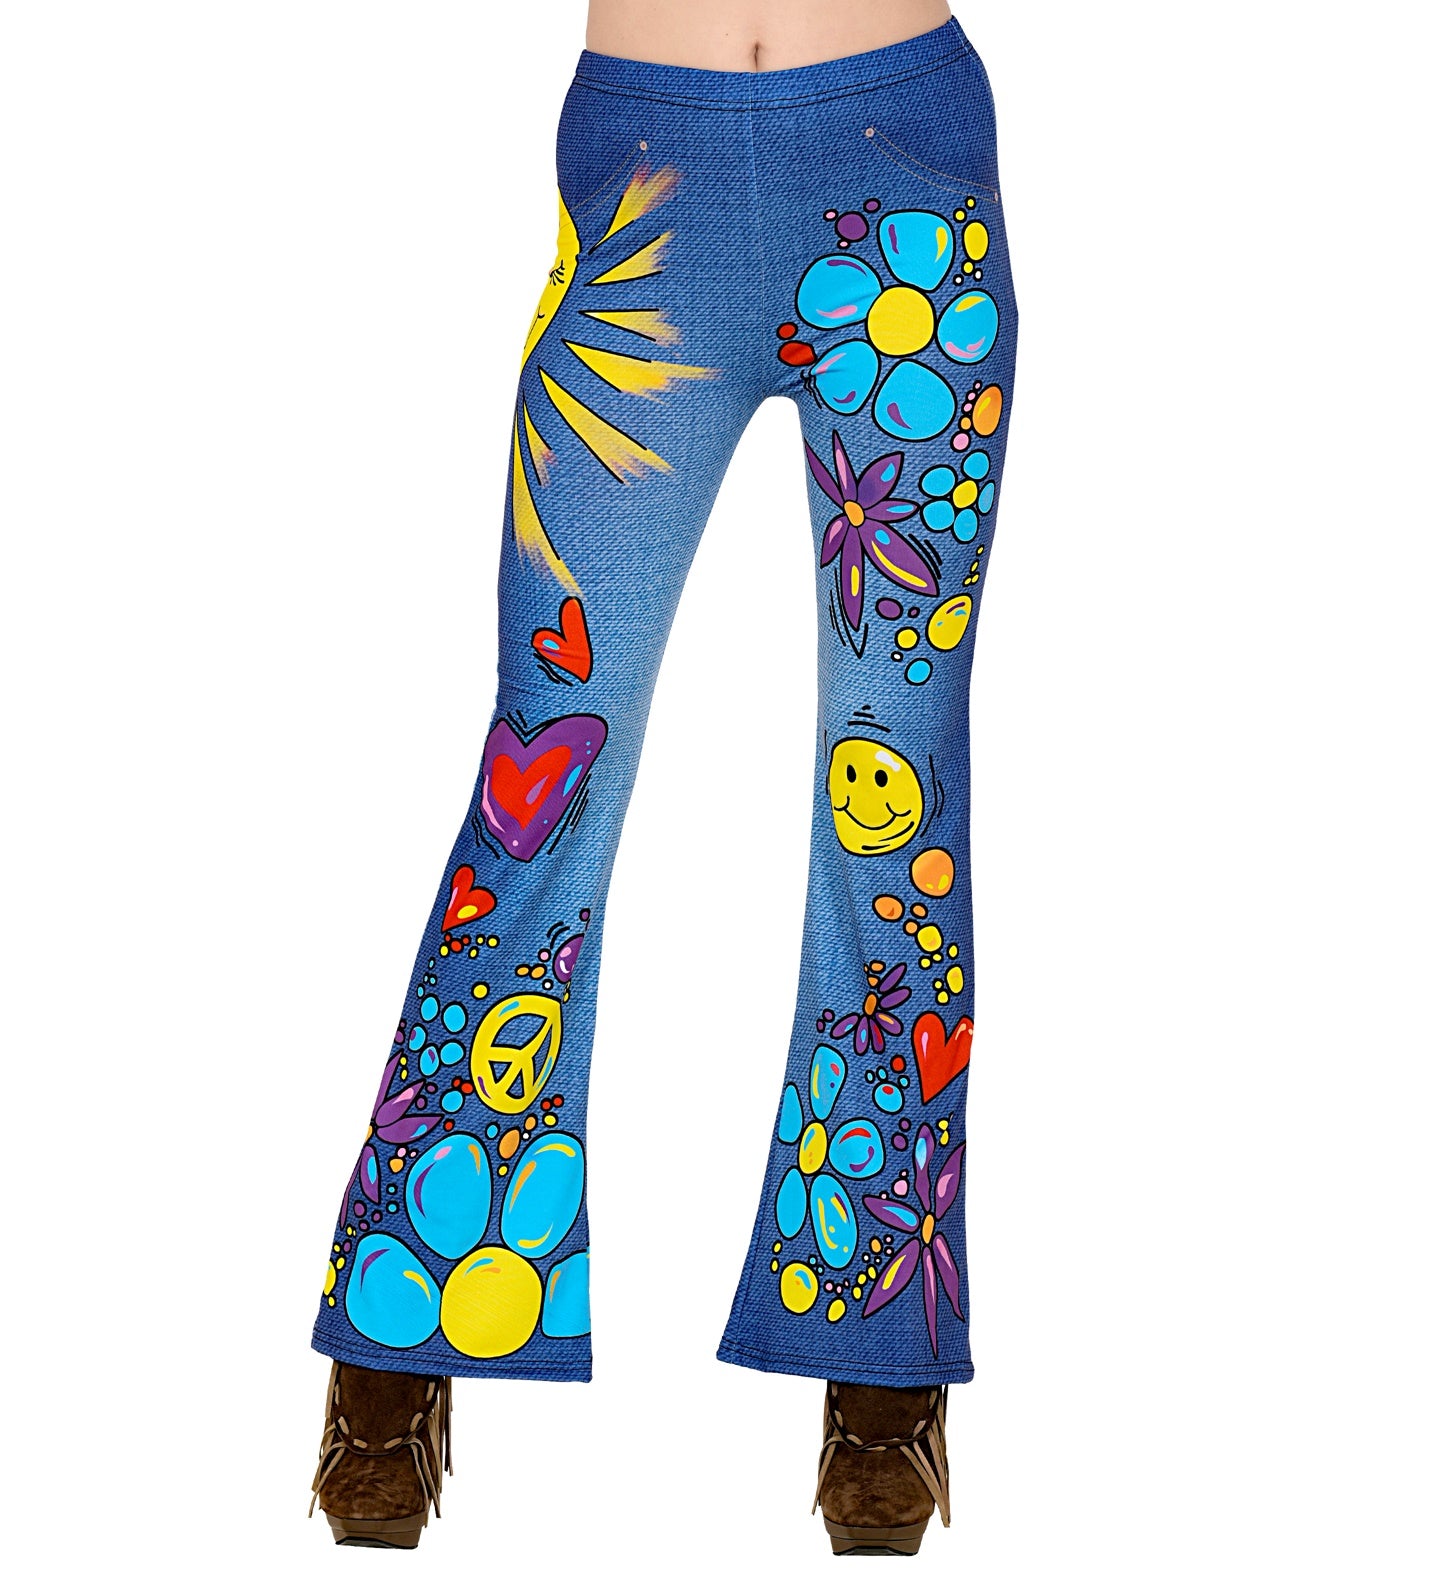 Hippie Jeans Leggings costume